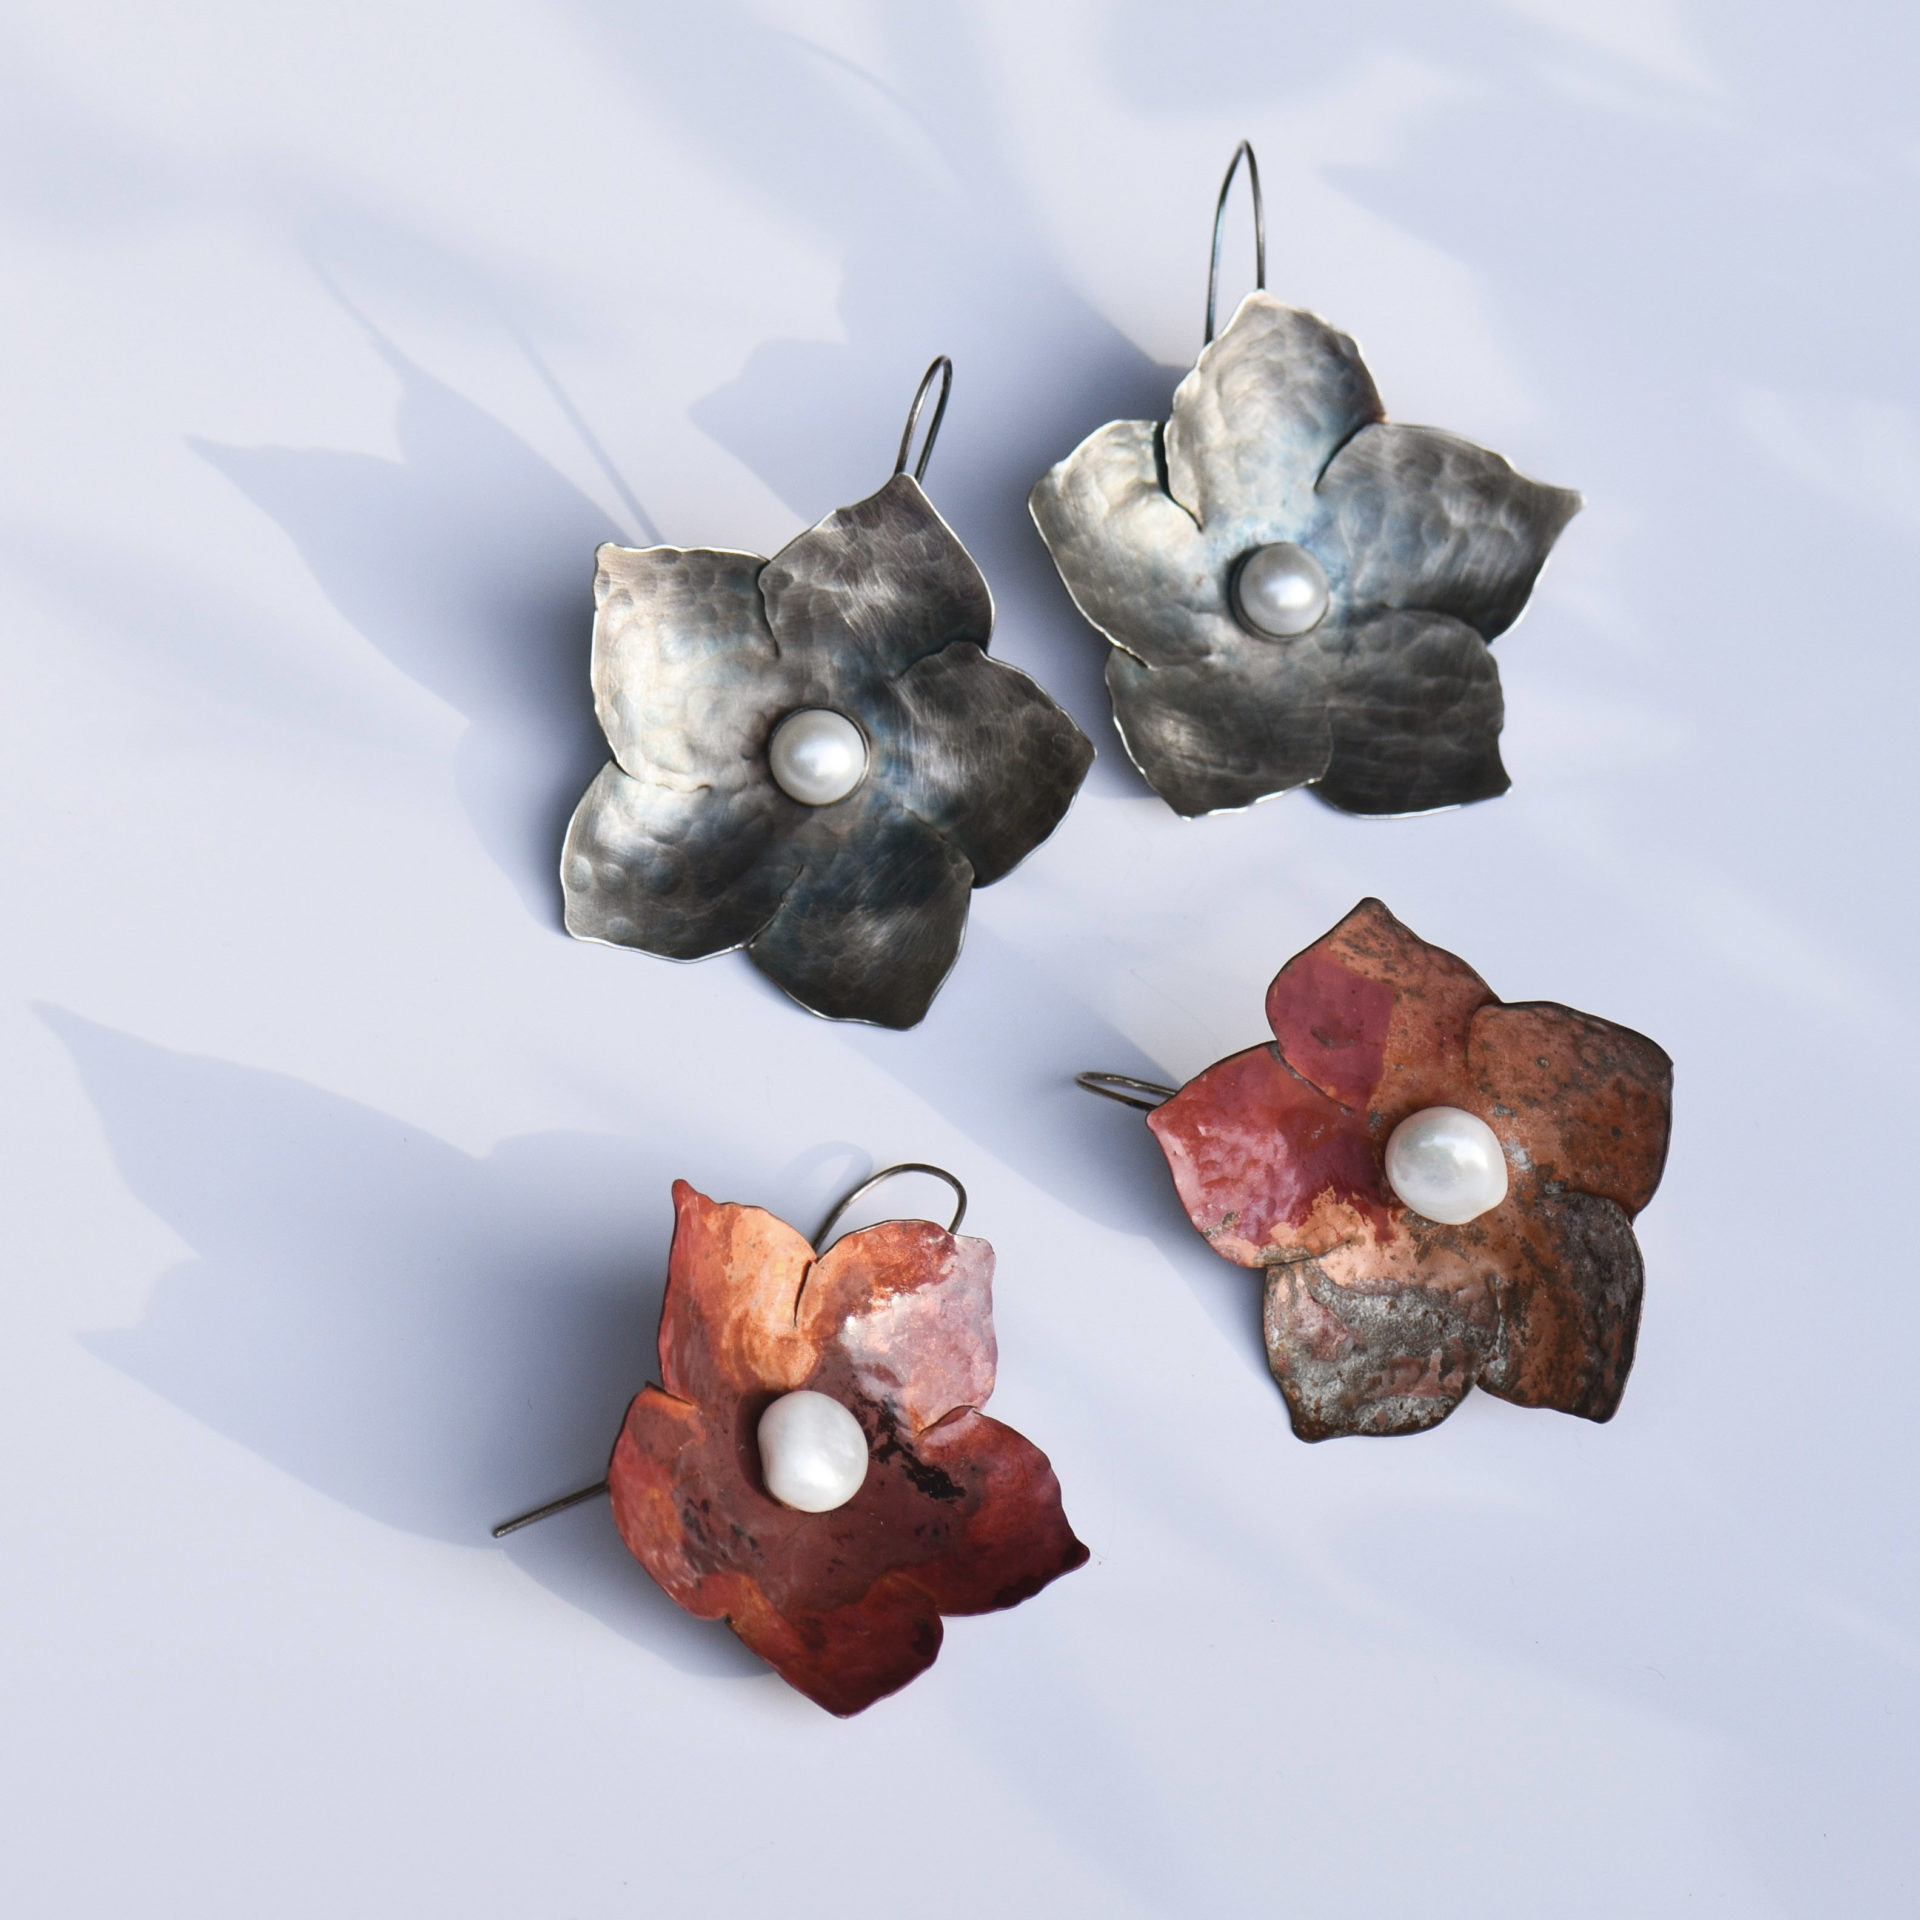 Flower kolczyki srebro oksydowane perla miedz wiszace bizuteria galeria ora